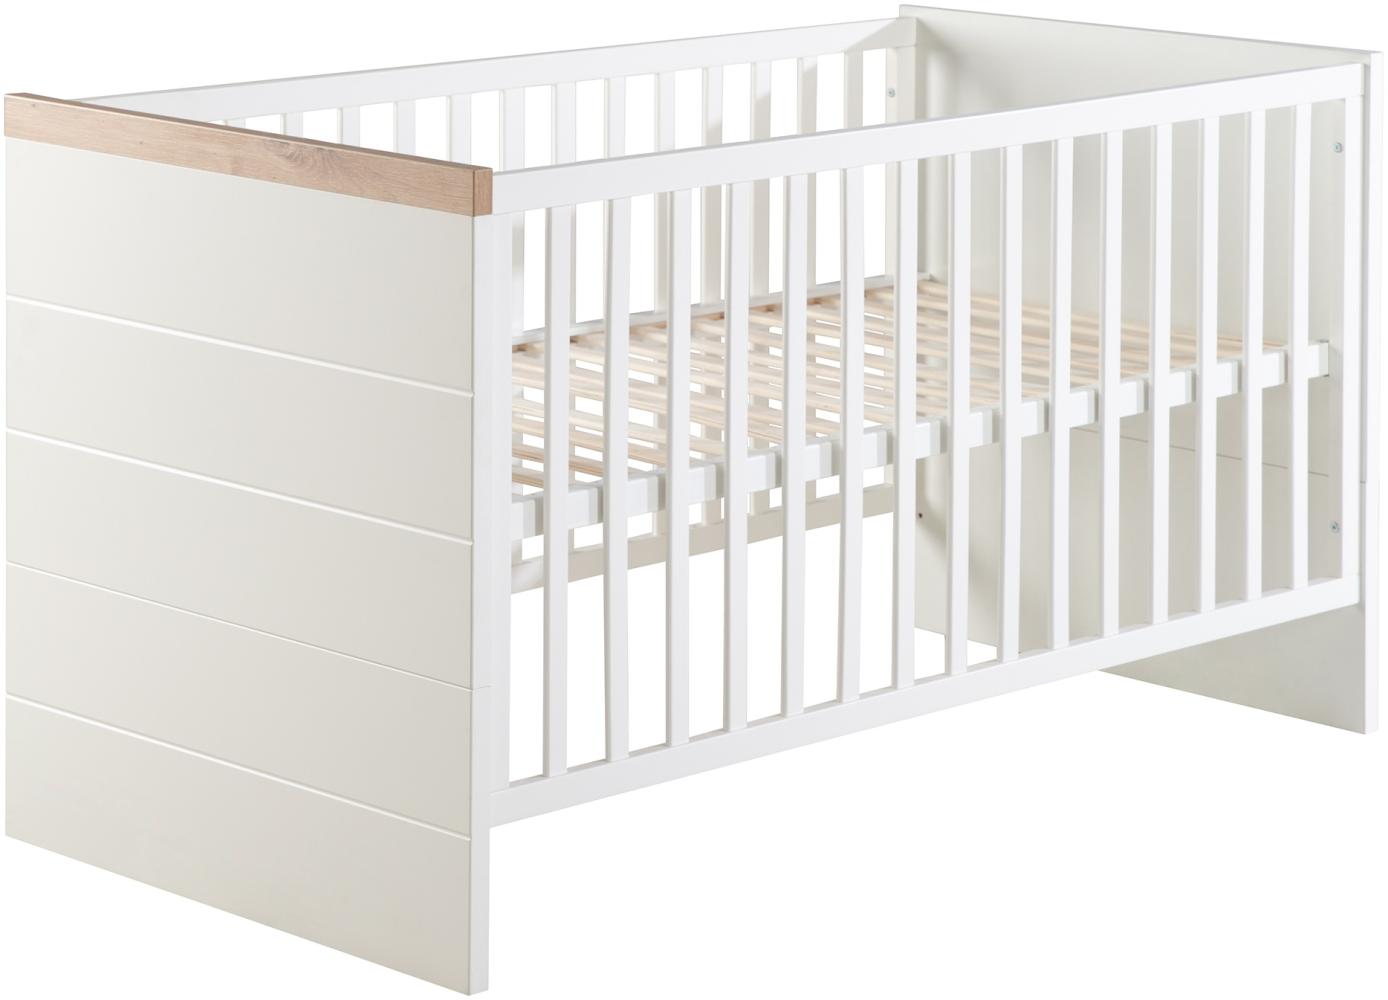 Roba 'Nele' Kombi-Kinderbett, 70x140 cm, weiß/artisan eiche, 3-fach höhenverstellbar, Schlupfsprossen, umbaubar Bild 1